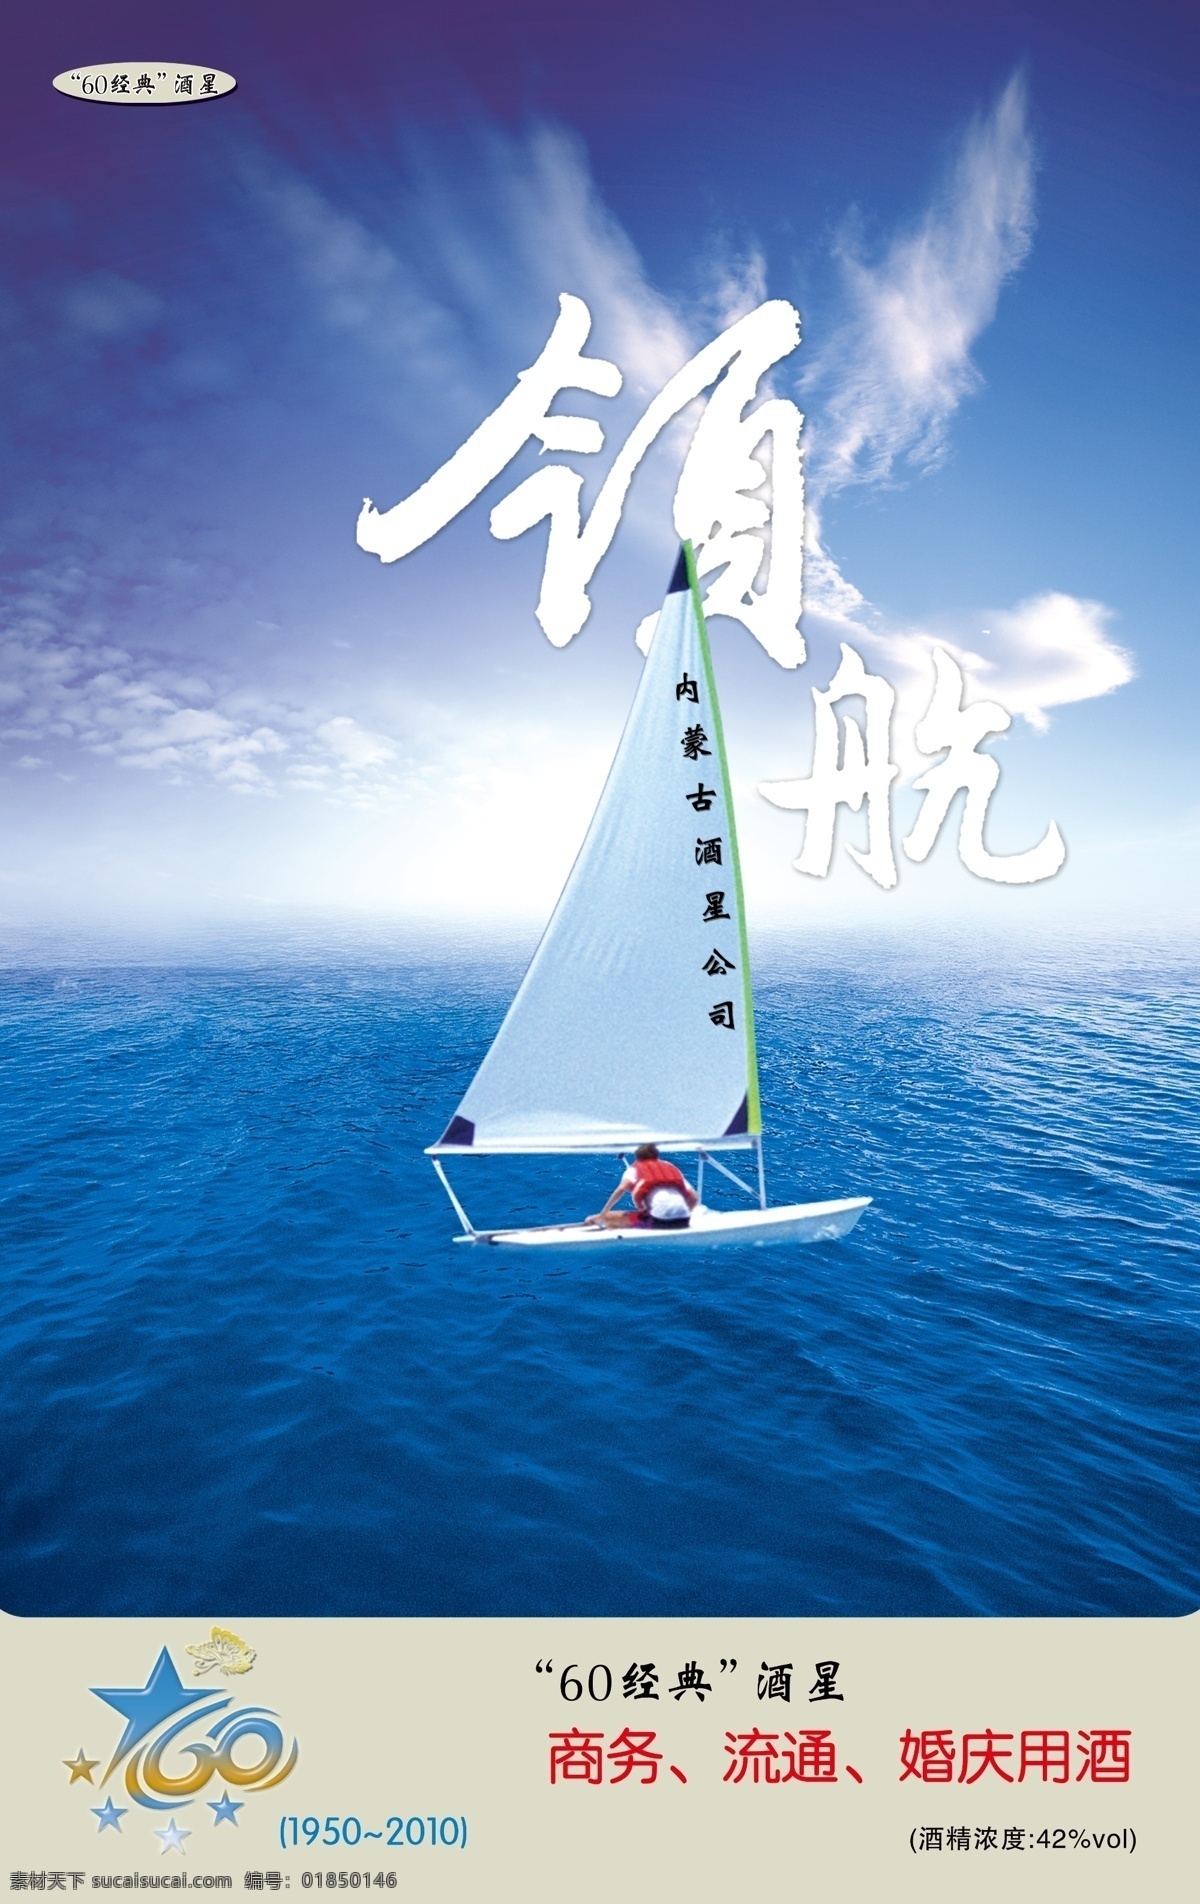 励志 背景 大海 帆船 蓝天白云 原创设计 原创海报